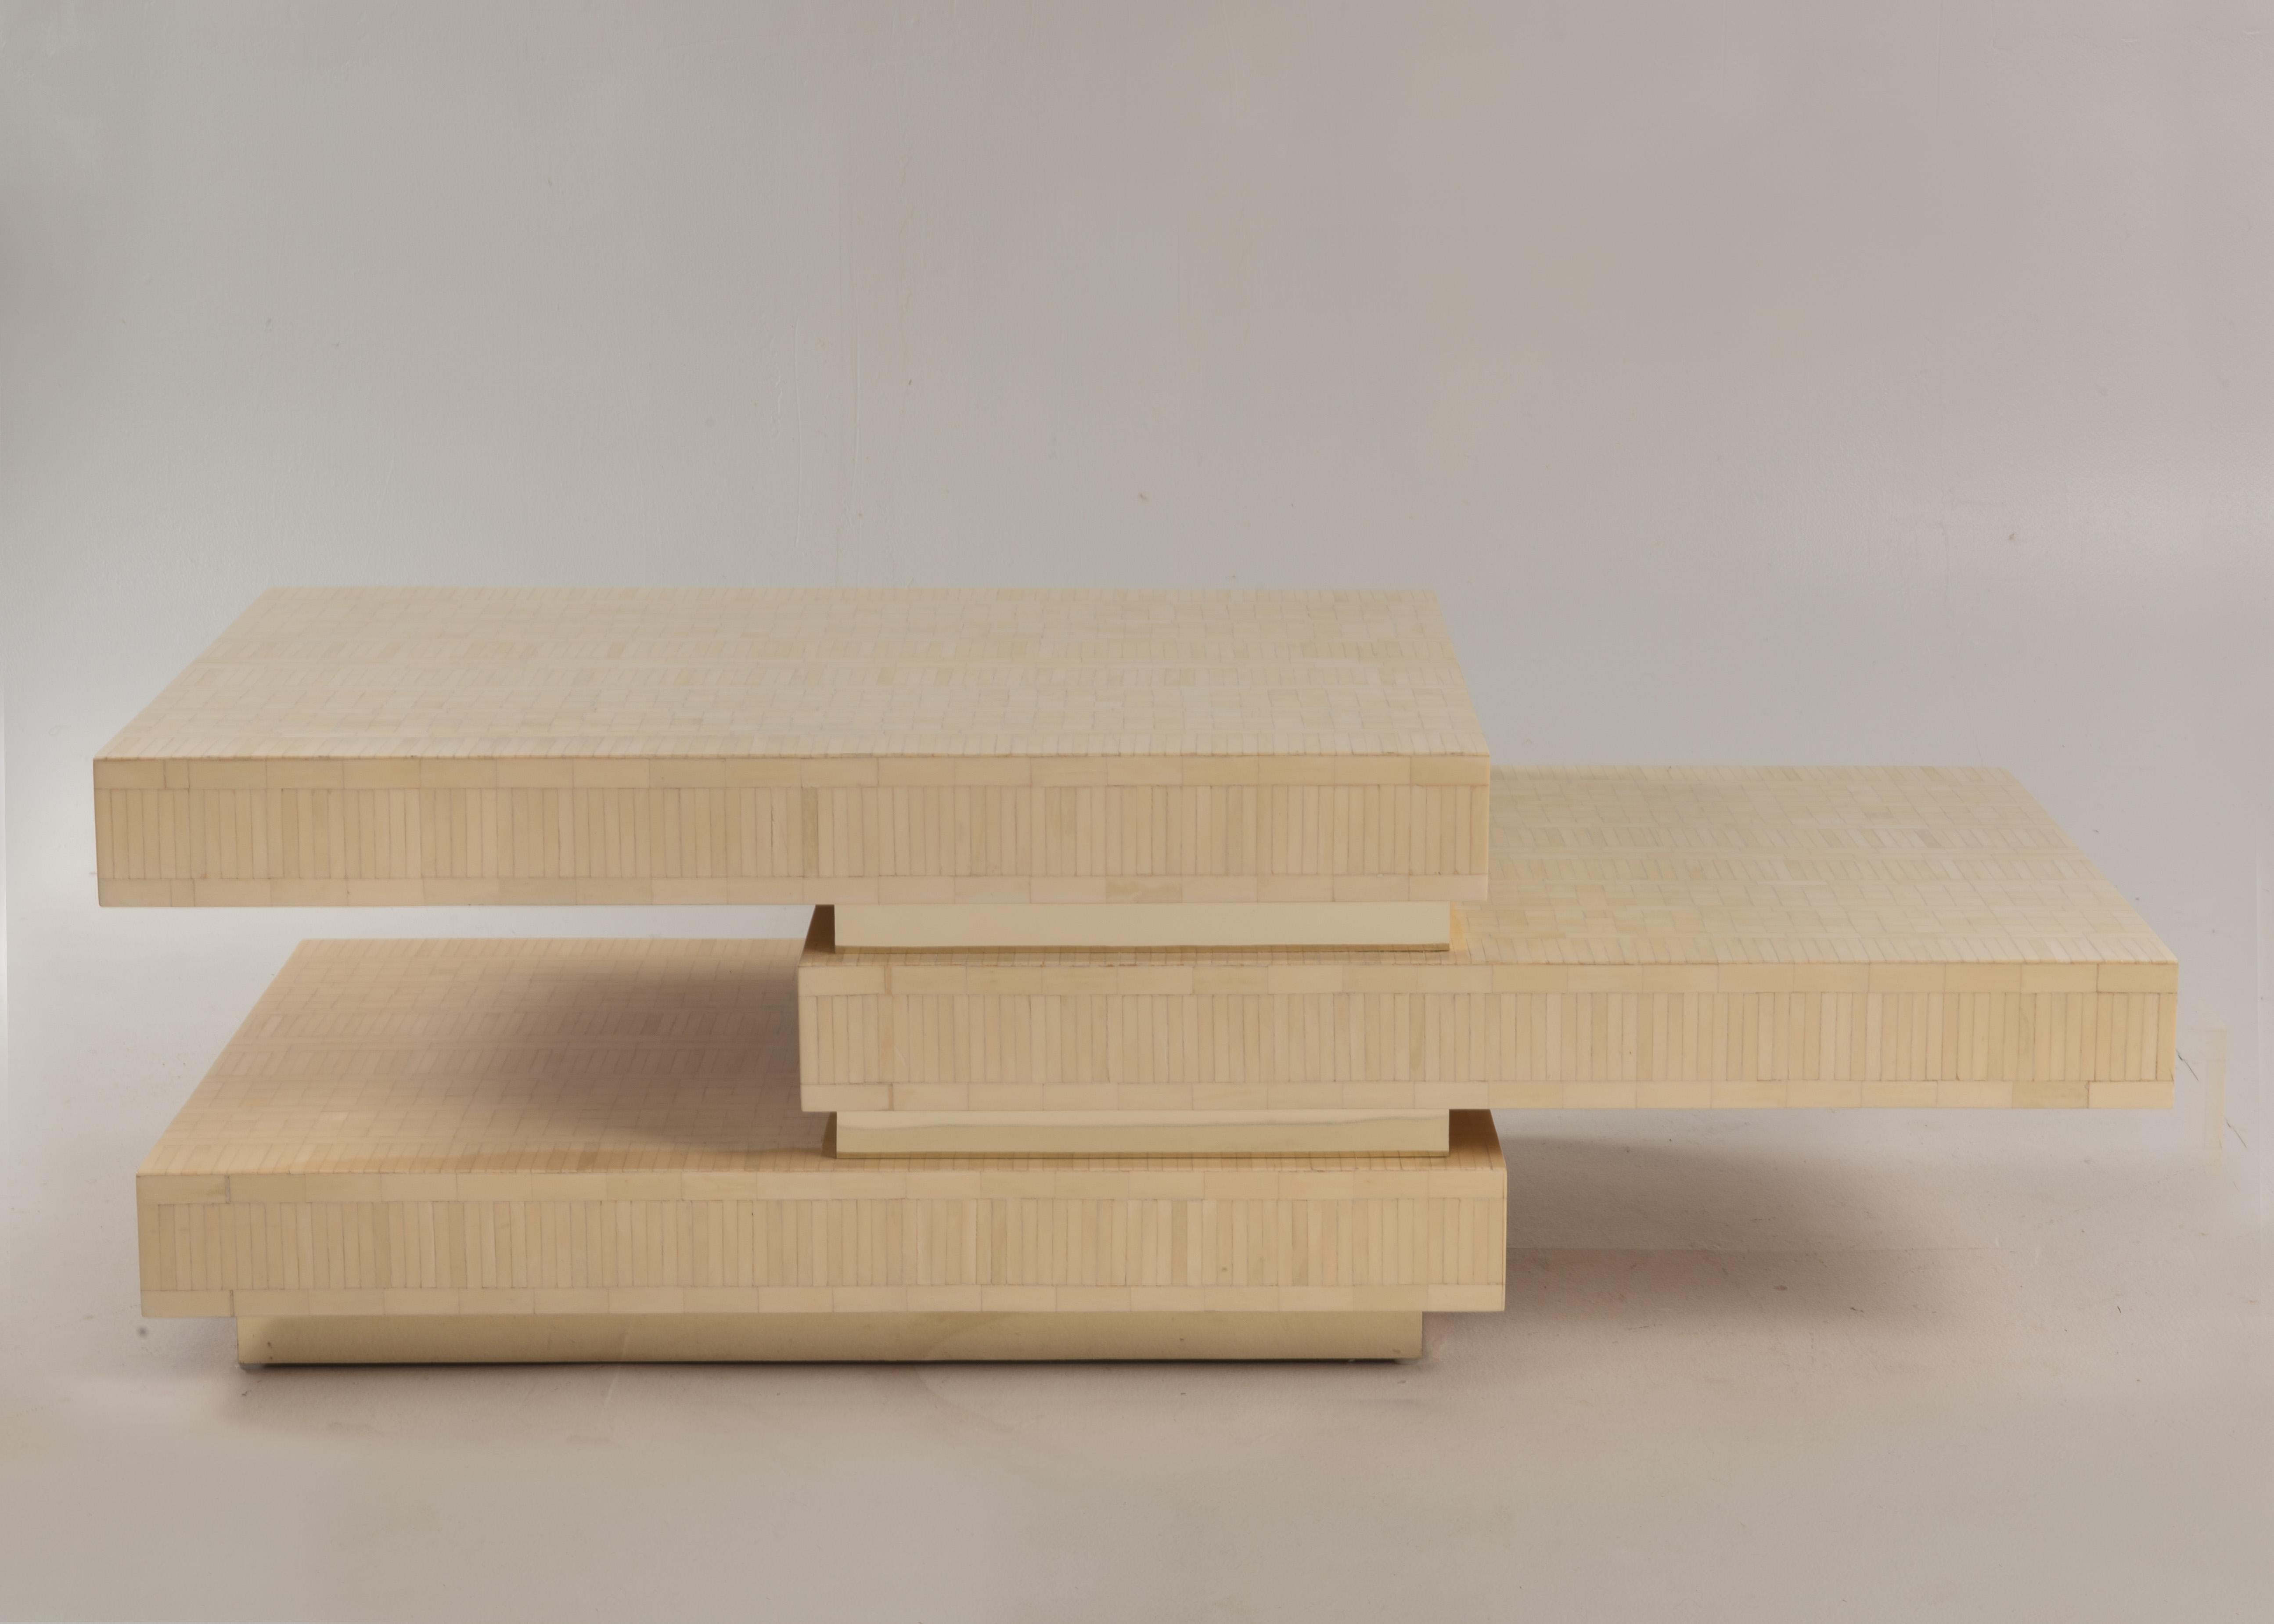 Table basse unique en os tessellé et laiton incrusté du designer colombien Enrique Garcel. La forme sculpturale est composée de trois étages.
Mesures : H 17.5